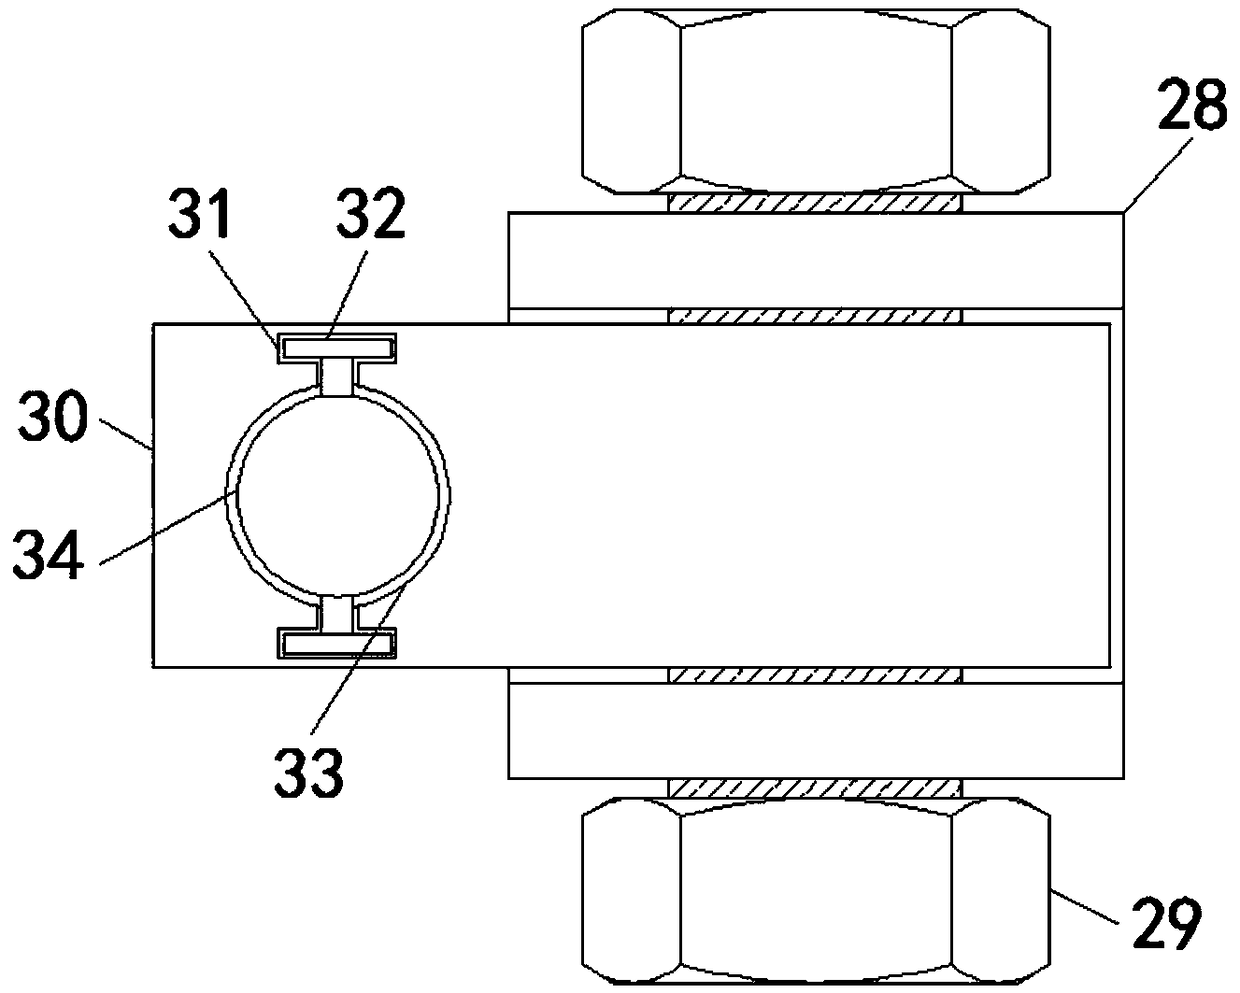 An efficient roller cutter chain stopper